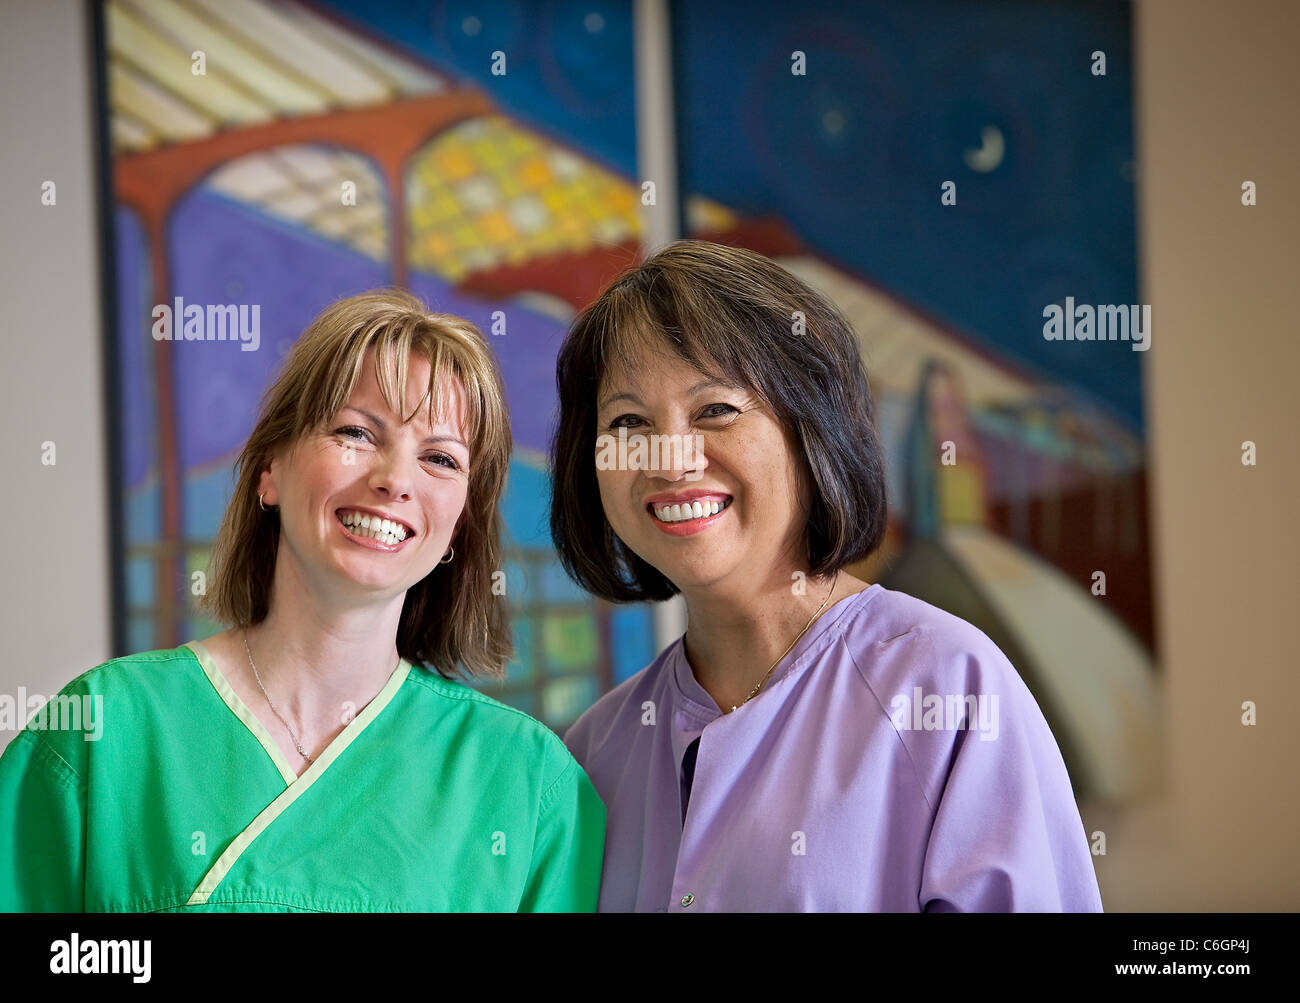 Deux infirmières posent par une peinture dans un hôpital. Banque D'Images